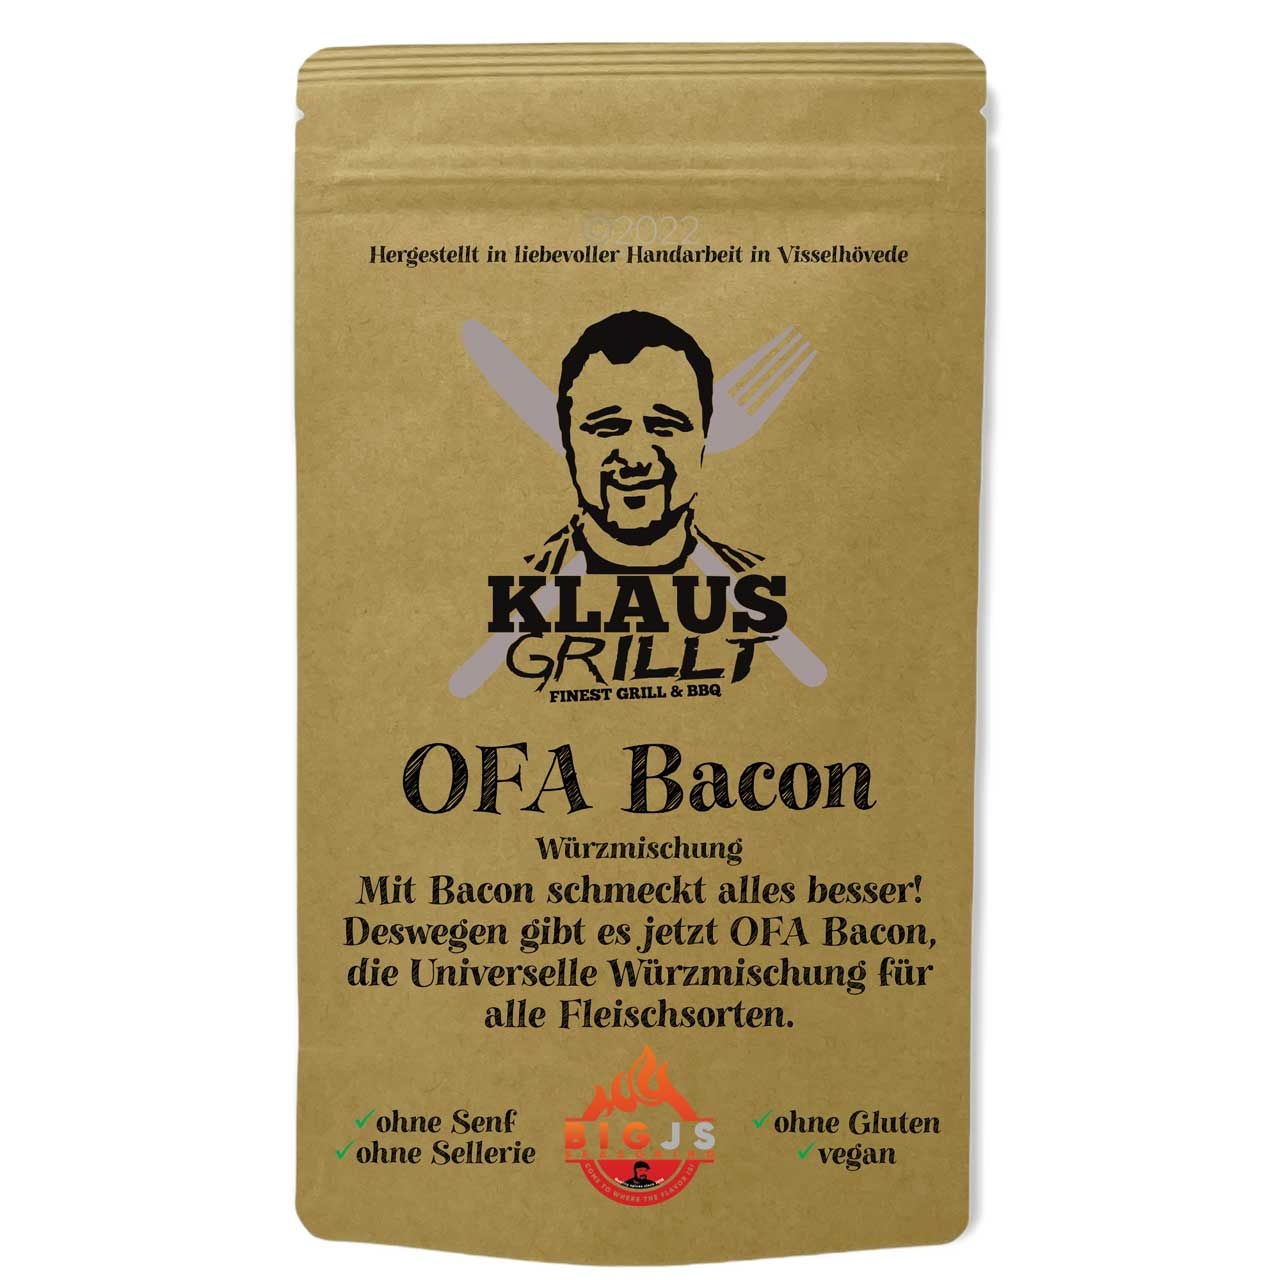 Klaus Grillt OFA Bacon, 250 g Beutel